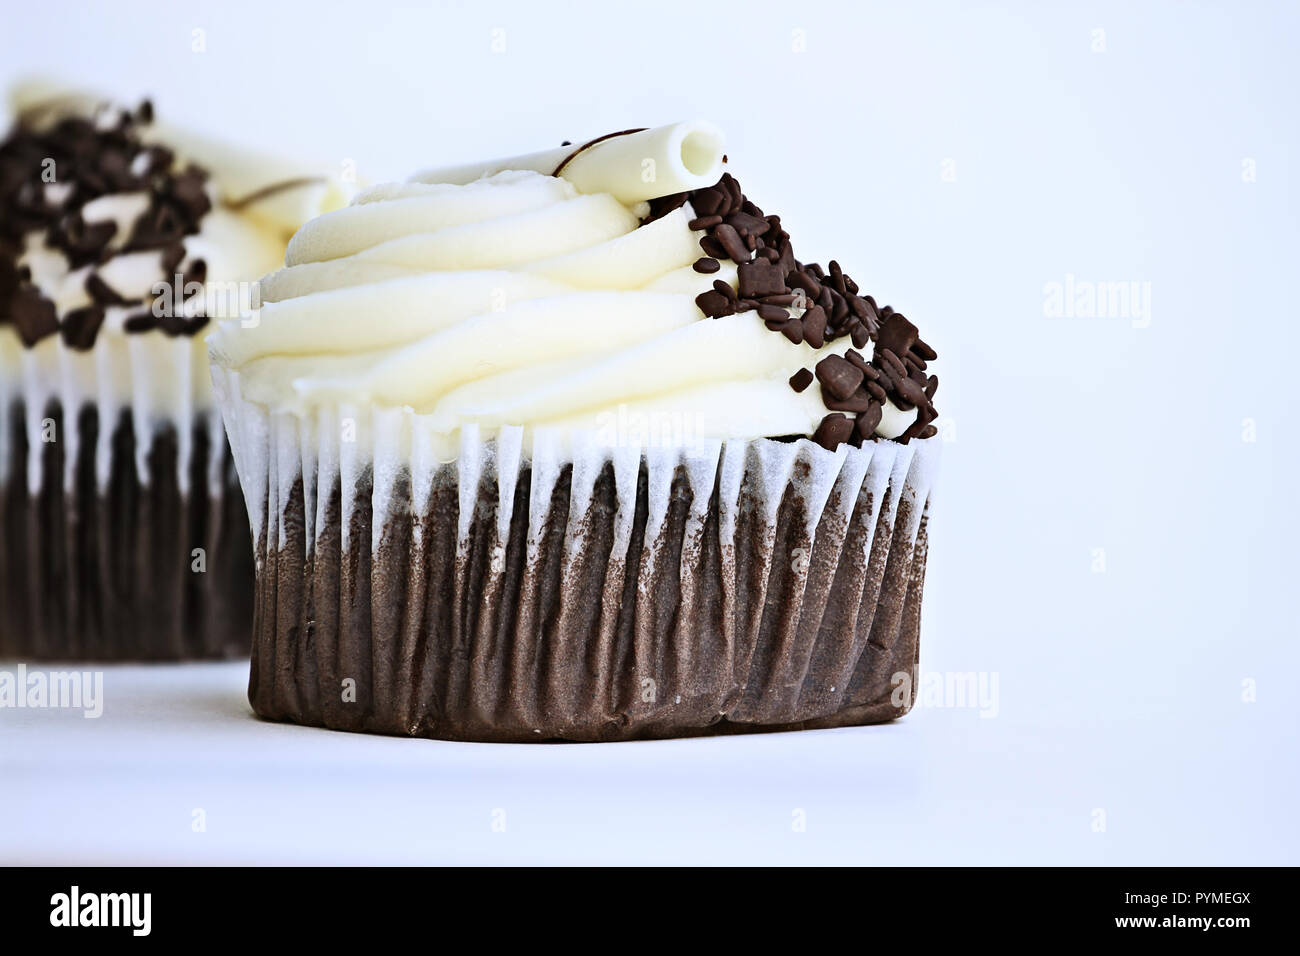 Joli petit gâteau au chocolat avec glaçage buttercream. Décoré avec des copeaux de chocolat blanc et de chocolat noir. Banque D'Images